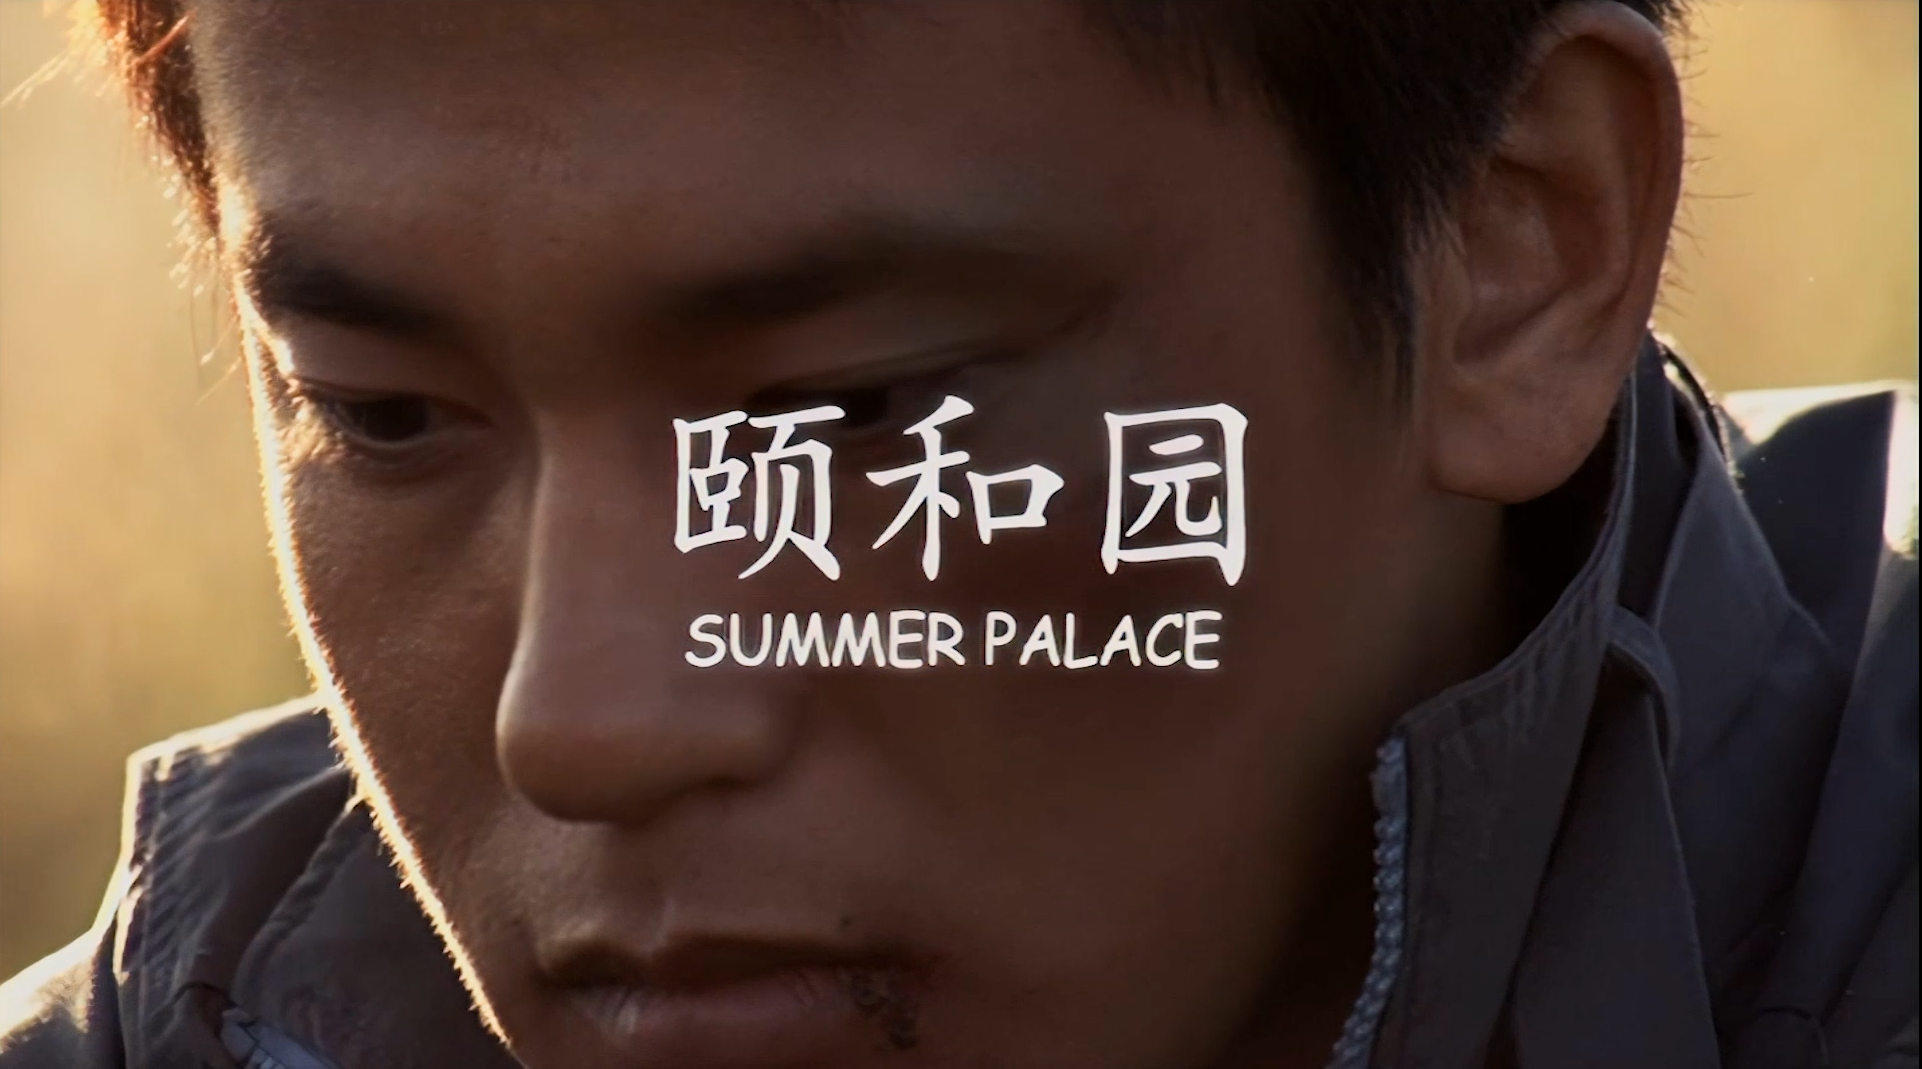 颐和园 [内地禁片高清修复简繁中字] Summer Palace 2006 DVD Blu-ray 1080p AVC AC3-5 1-BHYS@OurBits[20.27GB]-2.png